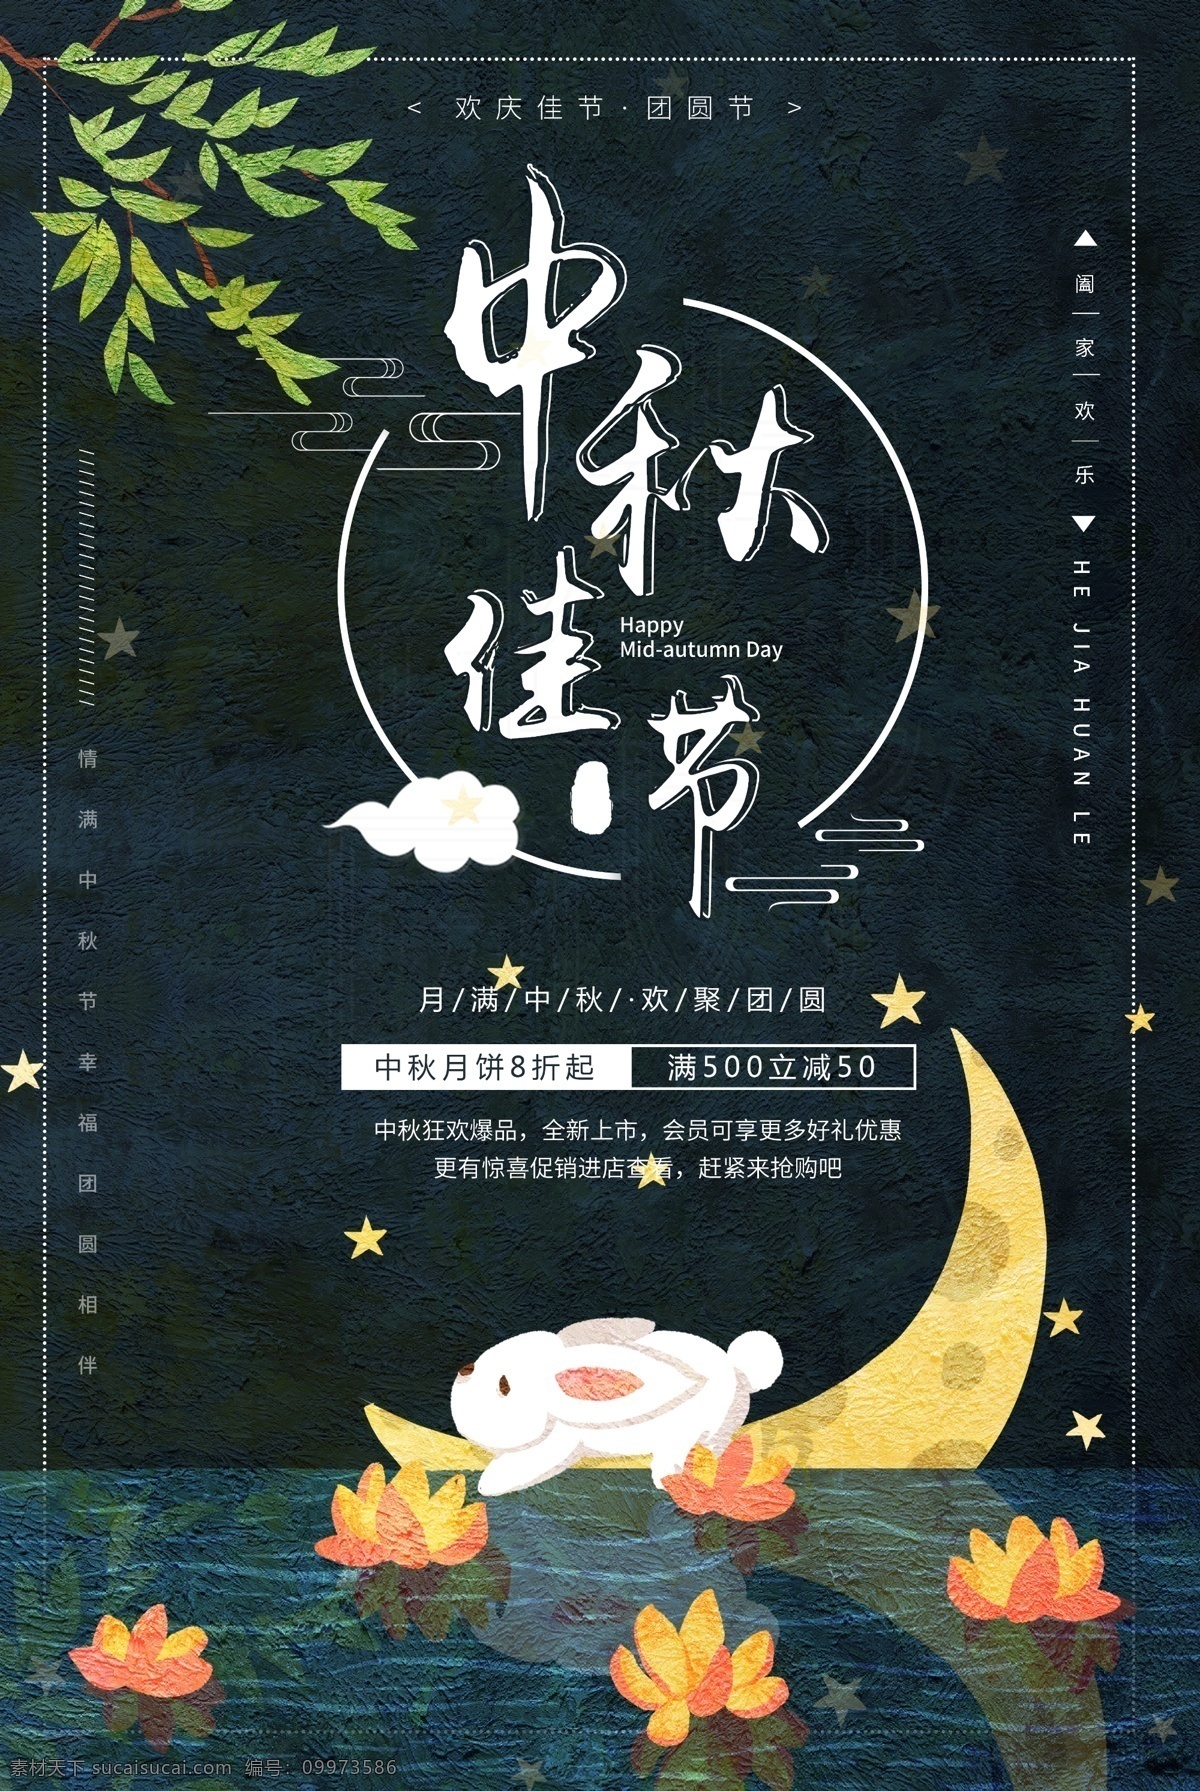 中秋节 节日海报 中国传统节日 8月15日 兔子 月饼 团圆 美好 庆祝 月亮 灯笼 荷花 明亮 星空 夜晚 愿望